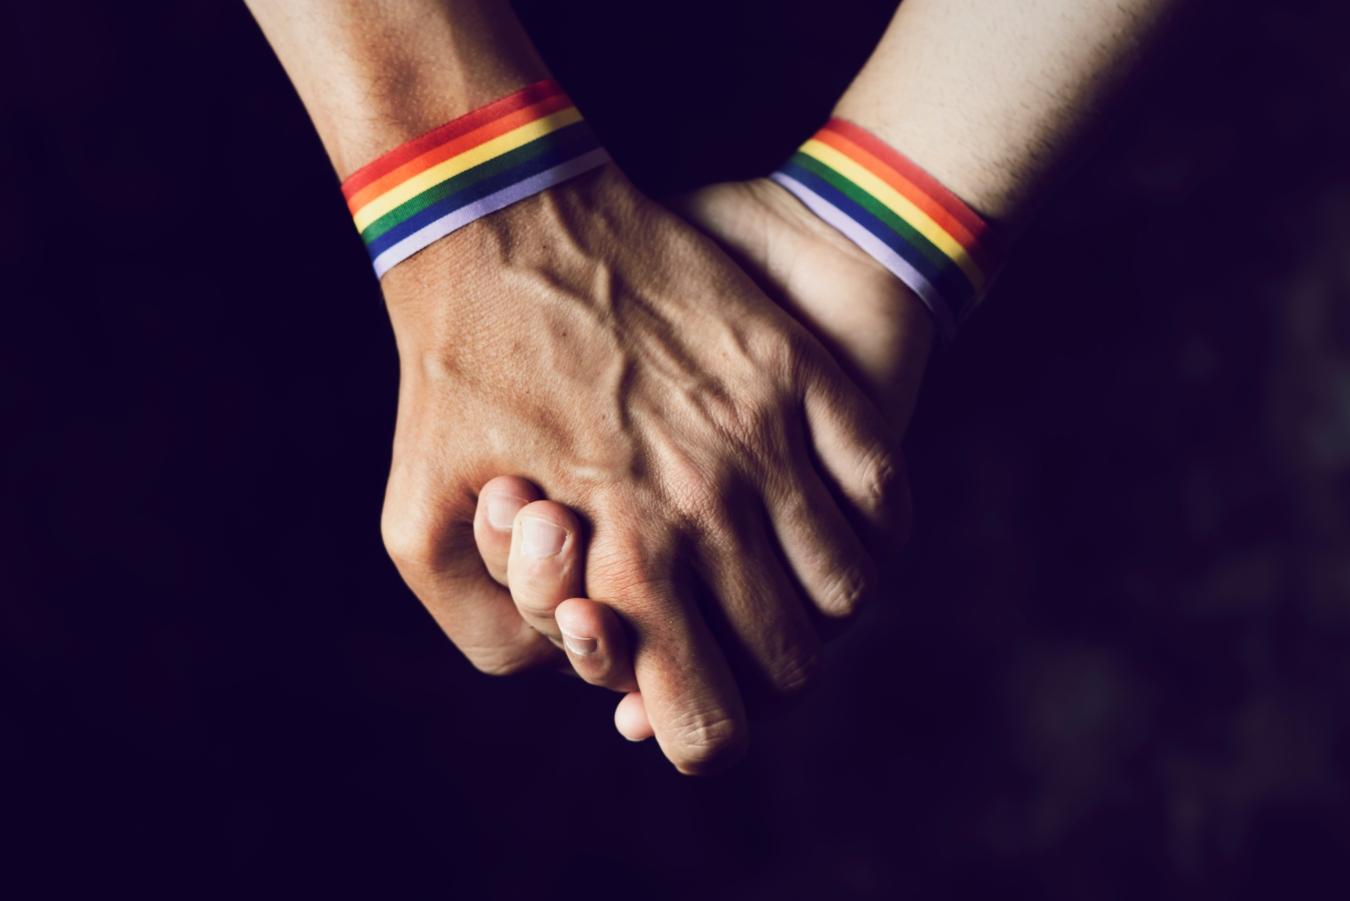 Coragem, ajudar pessoas com atração pelo mesmo sexo